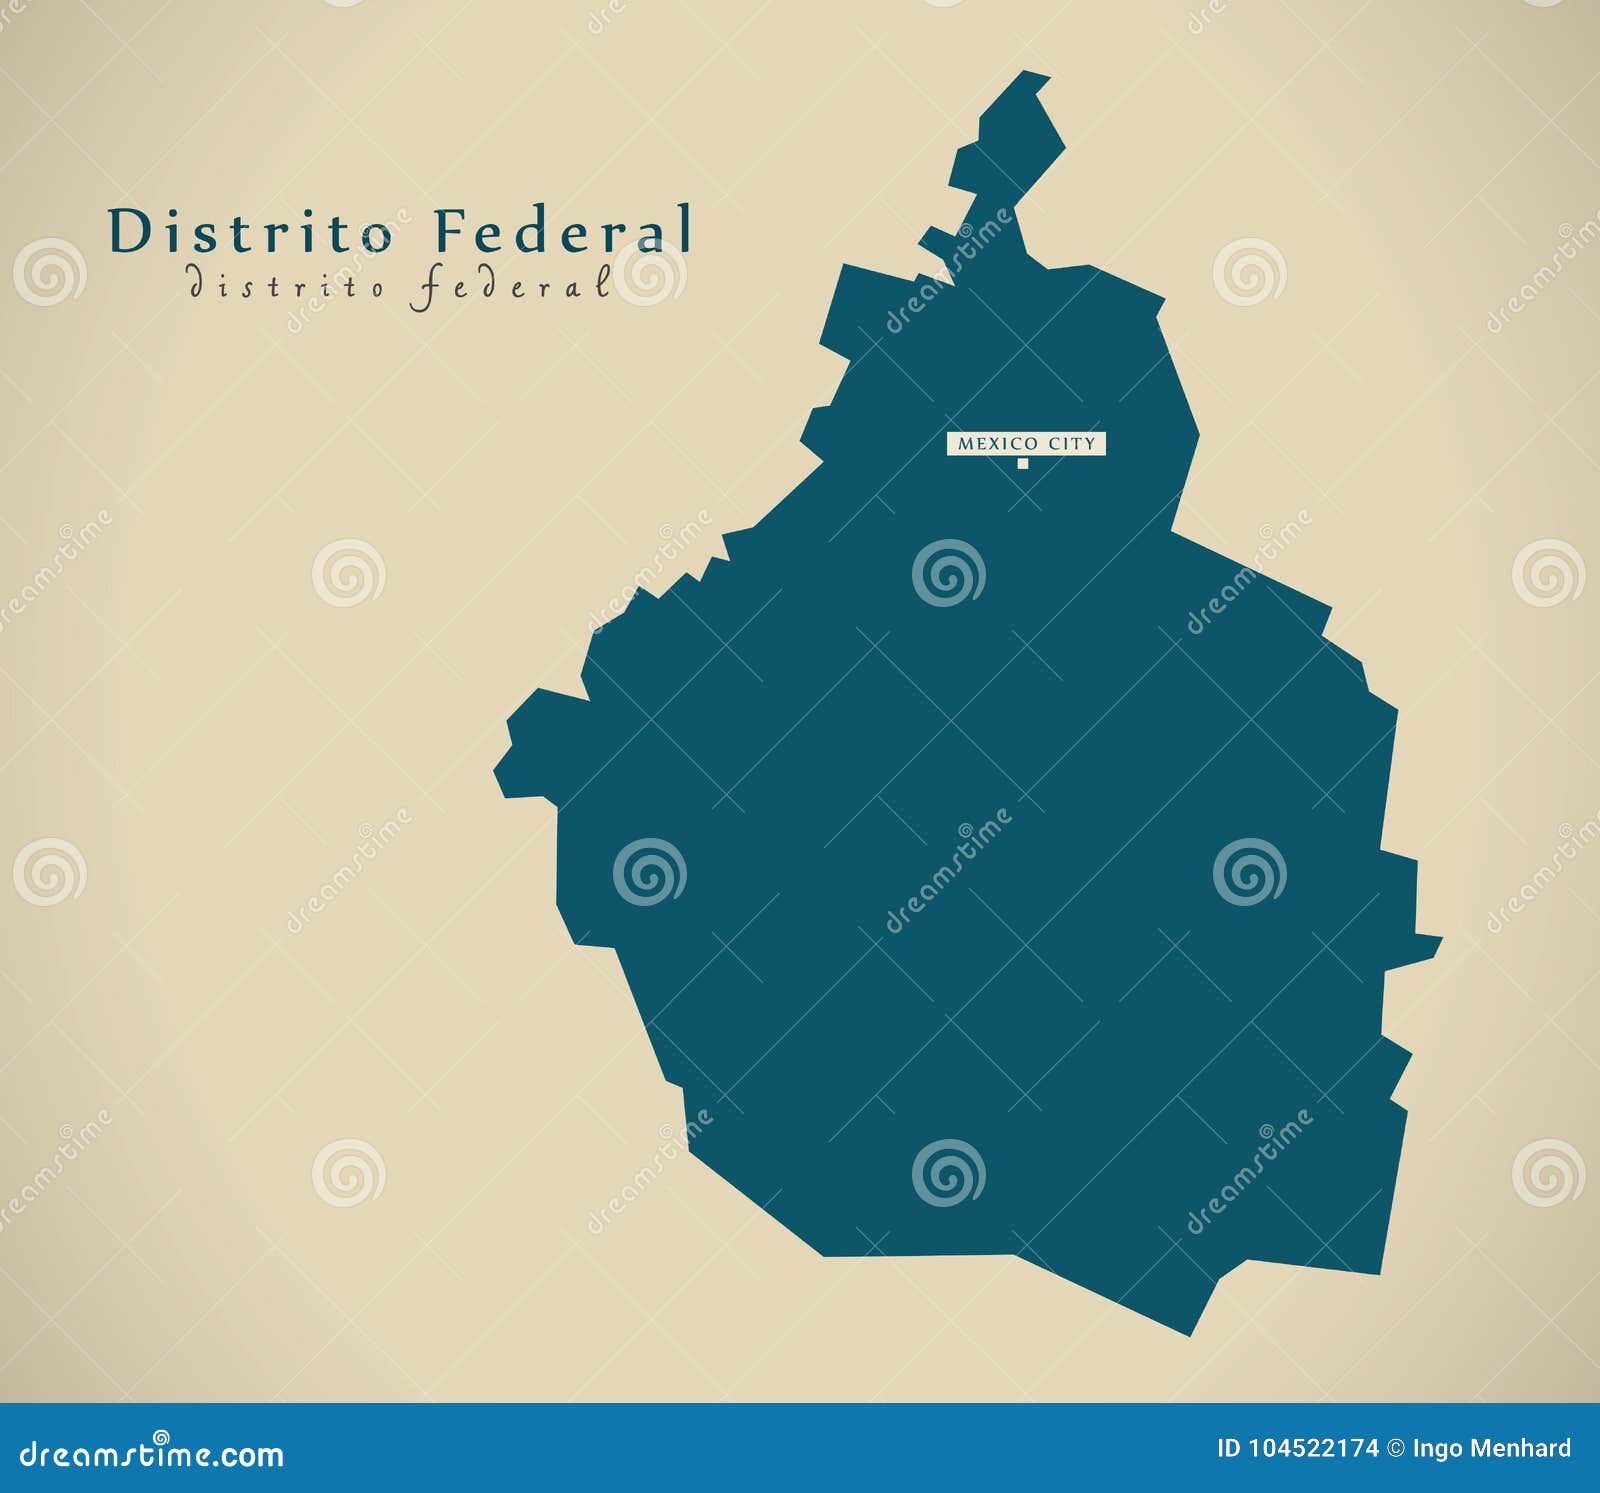 modern map - distrito federal mexico mx